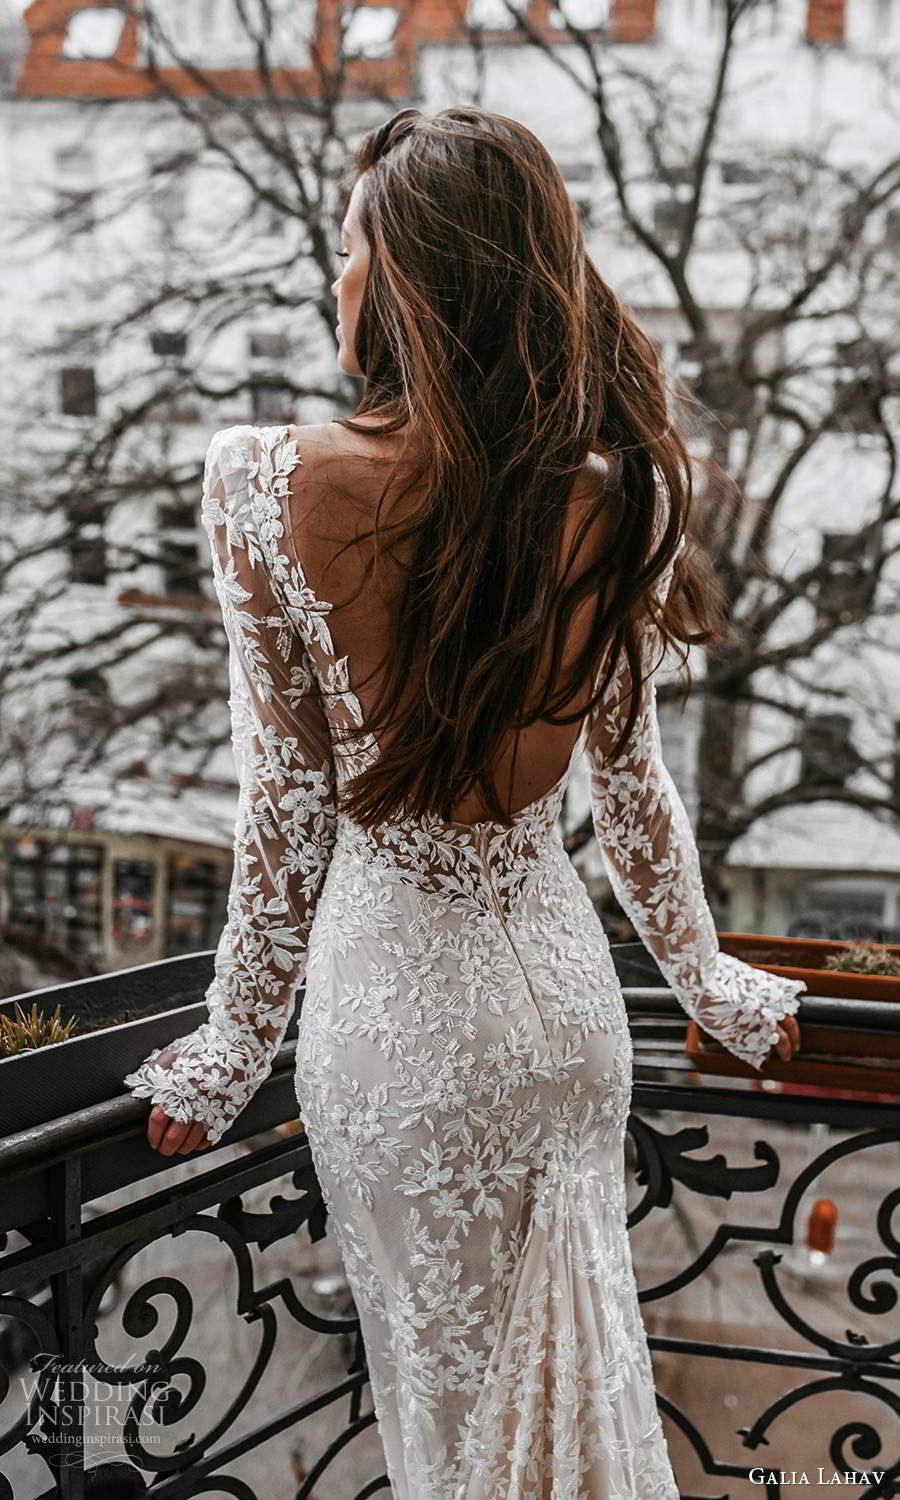 Loveable Long Sleeved Wedding Dresses